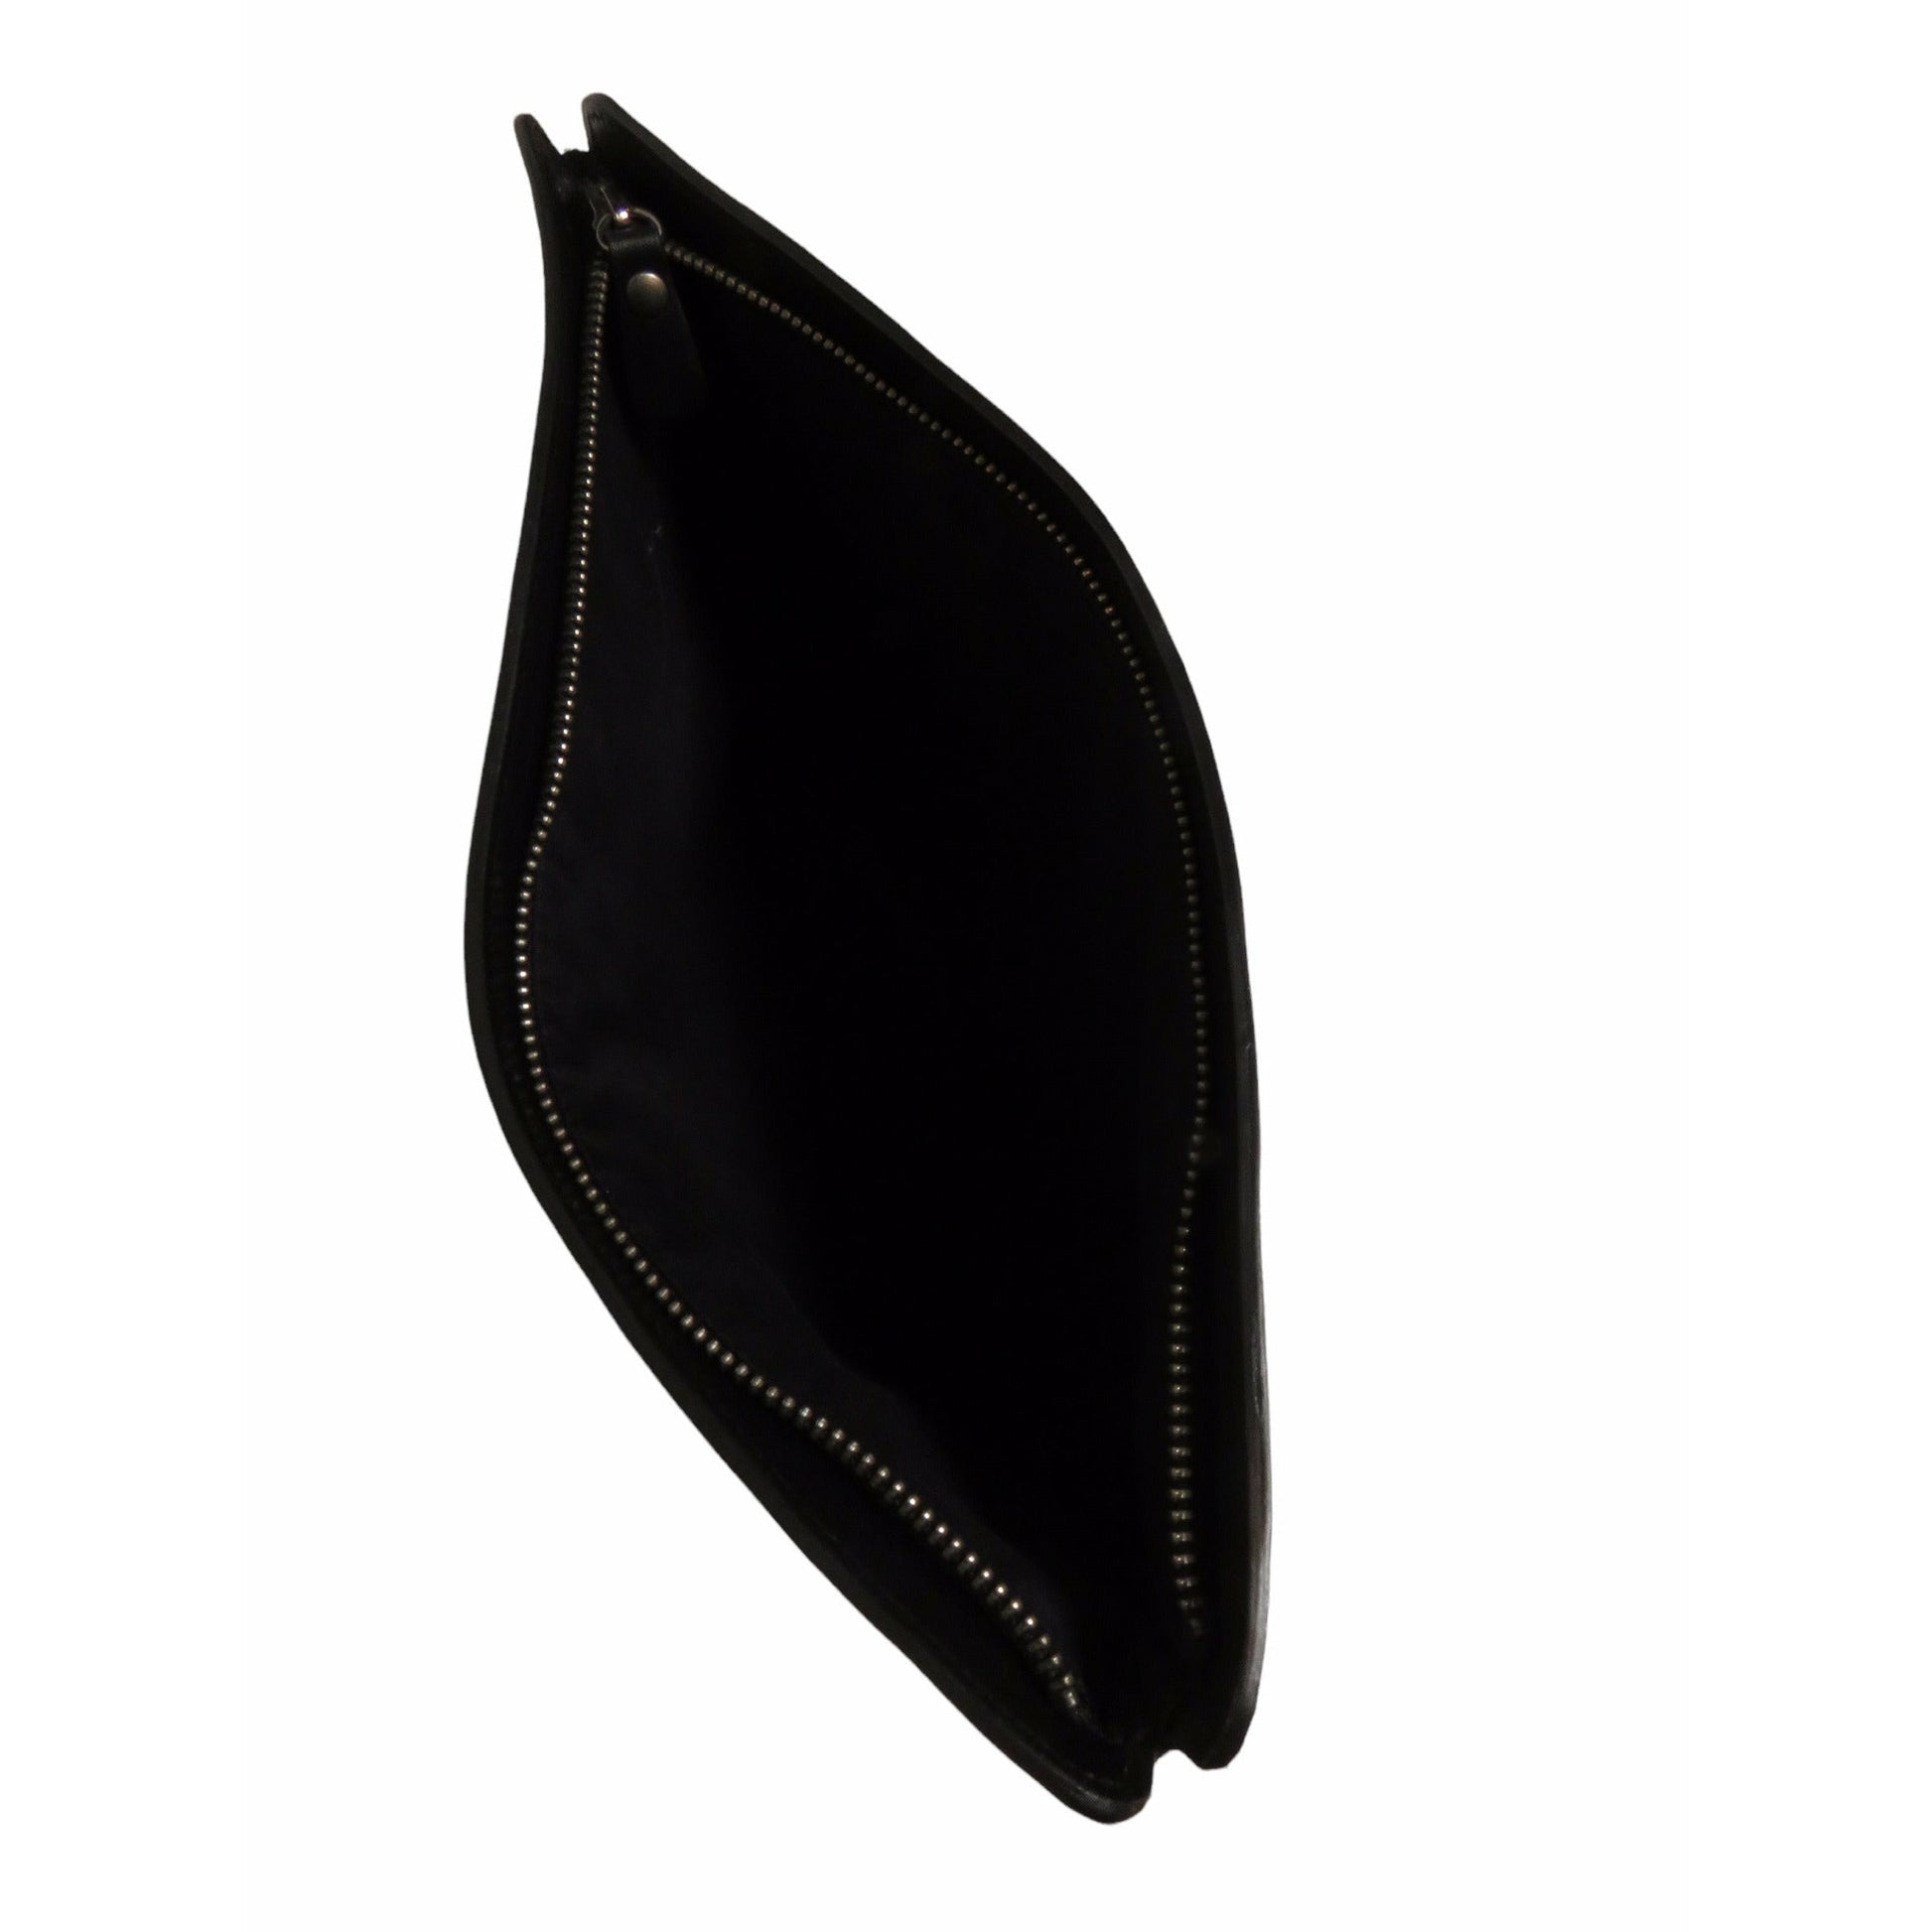 A.F. Vandevorst Handbags OS / Black and Silver / Leather A.F. Vandevorst Clutch